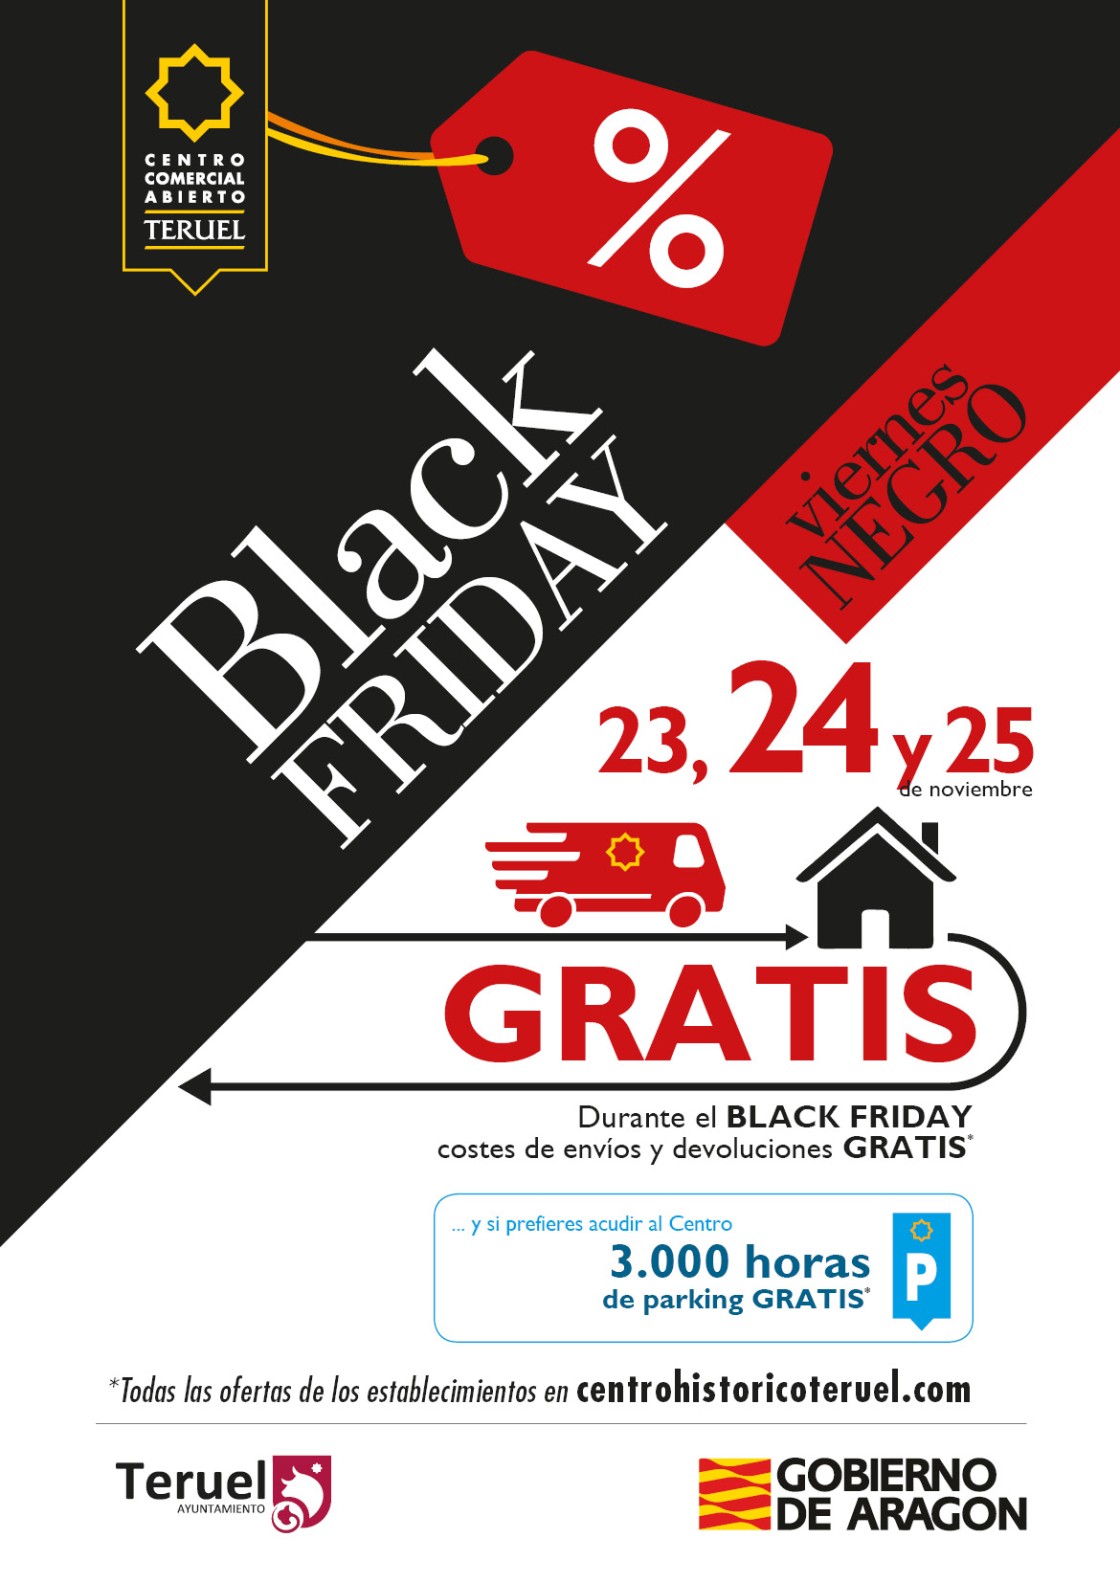 El Centro Comercial Abierto incentiva las compras en Teruel en el Black Friday con ventajas añadidas a los descuentos